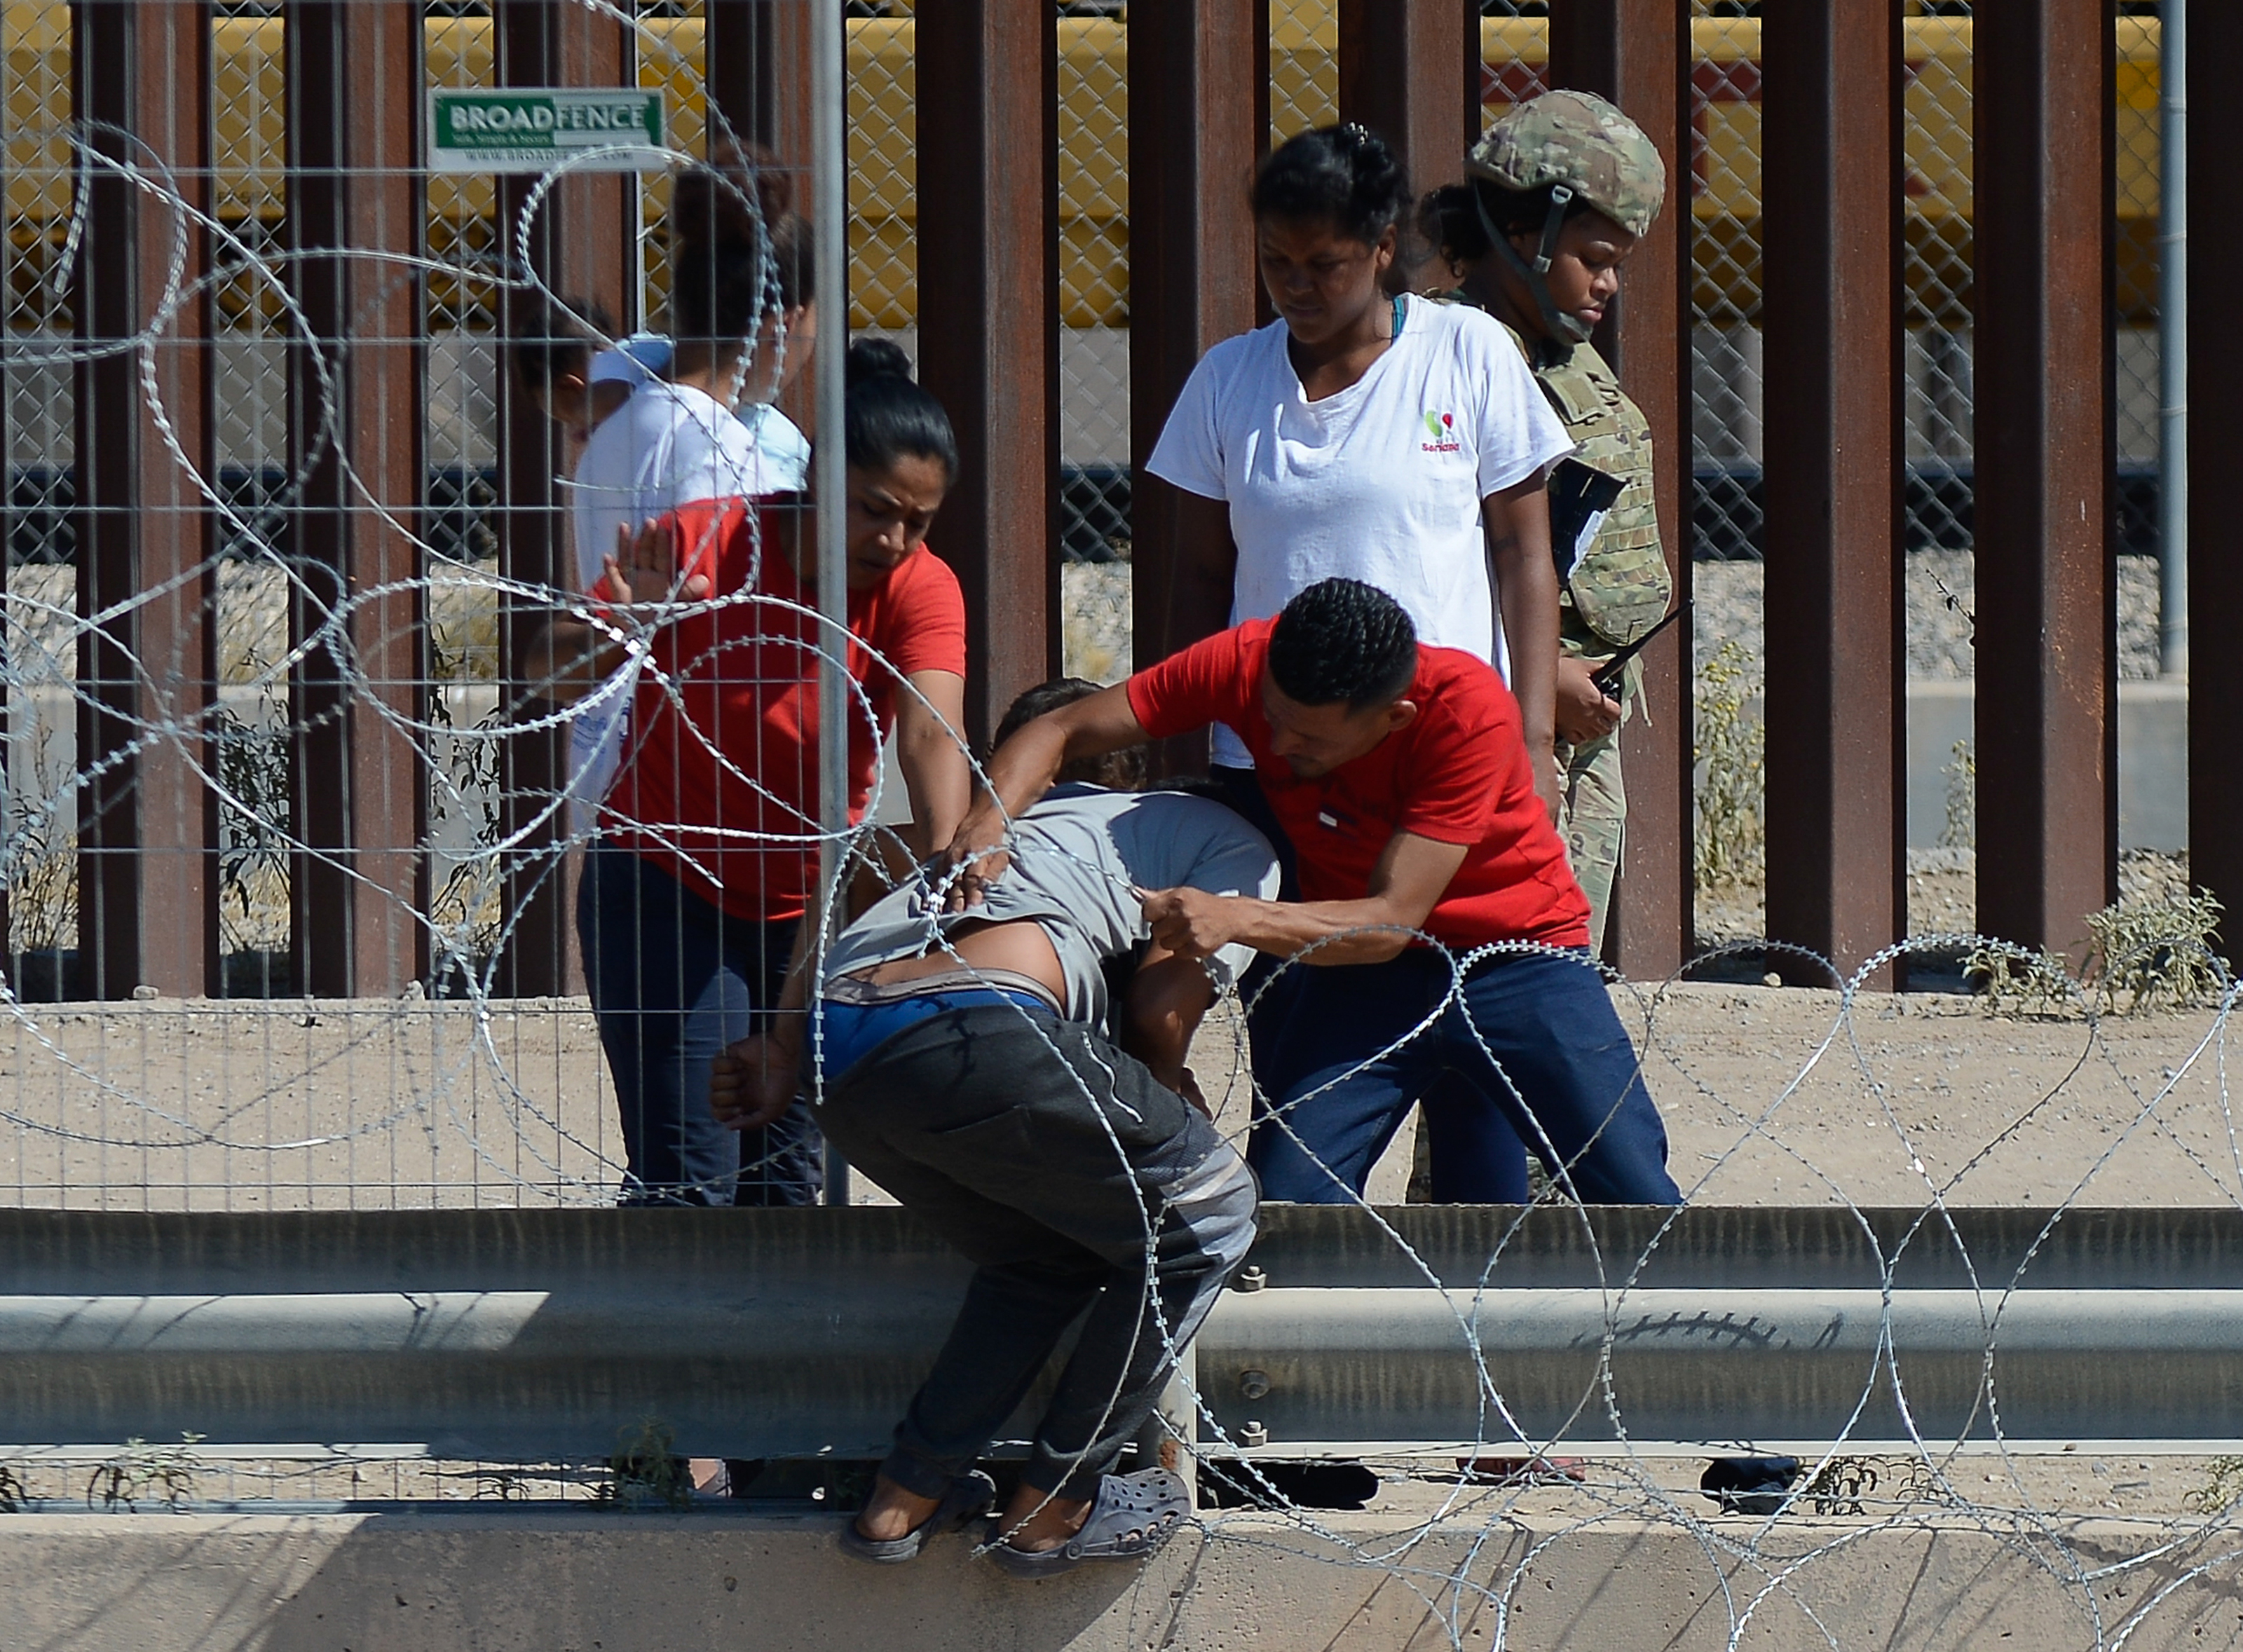 Migrantes desafían filosa alambrada instalada en frontera norte para pedir asilo en EEUU